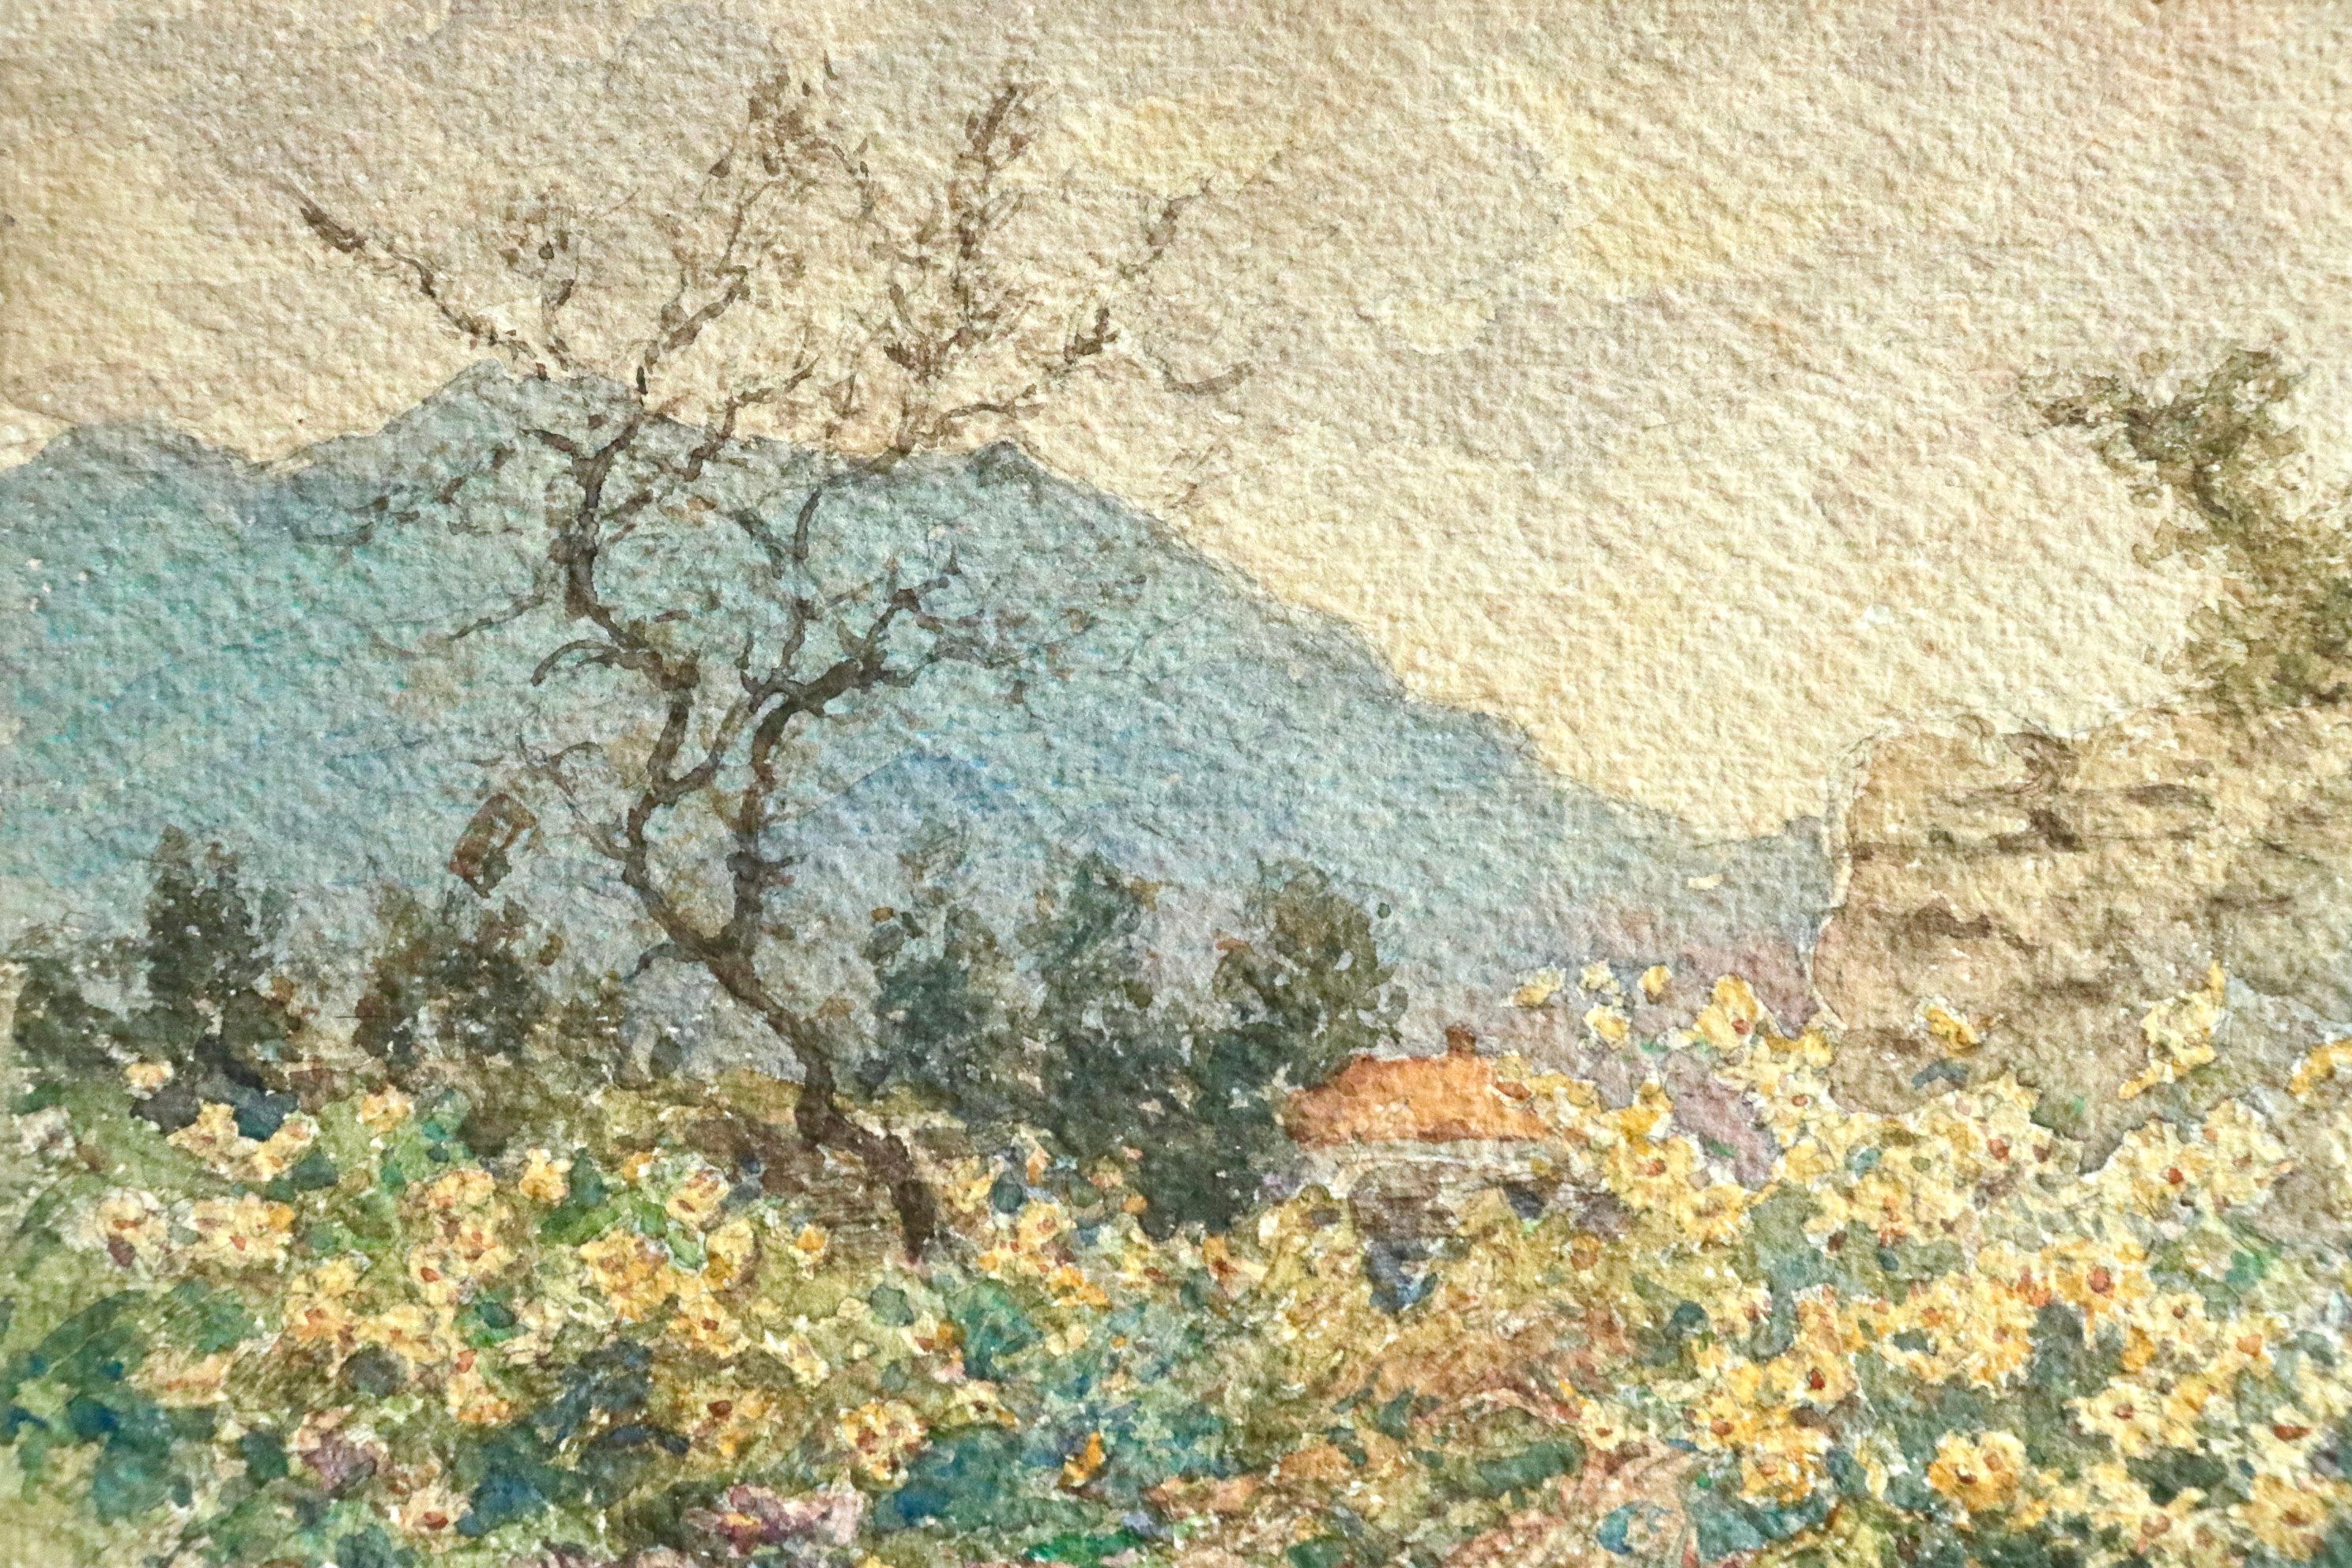 Ein wunderschönes Aquarell auf Papier von Henri Duhem um 1910, das eine herbstliche Landschaft zeigt - mit einem Weg, der sich durch zerbrochene Zäune schlängelt, gelben Blumen und einem kahlen Baum, mit einer Hütte in der Ferne und einem Blick auf